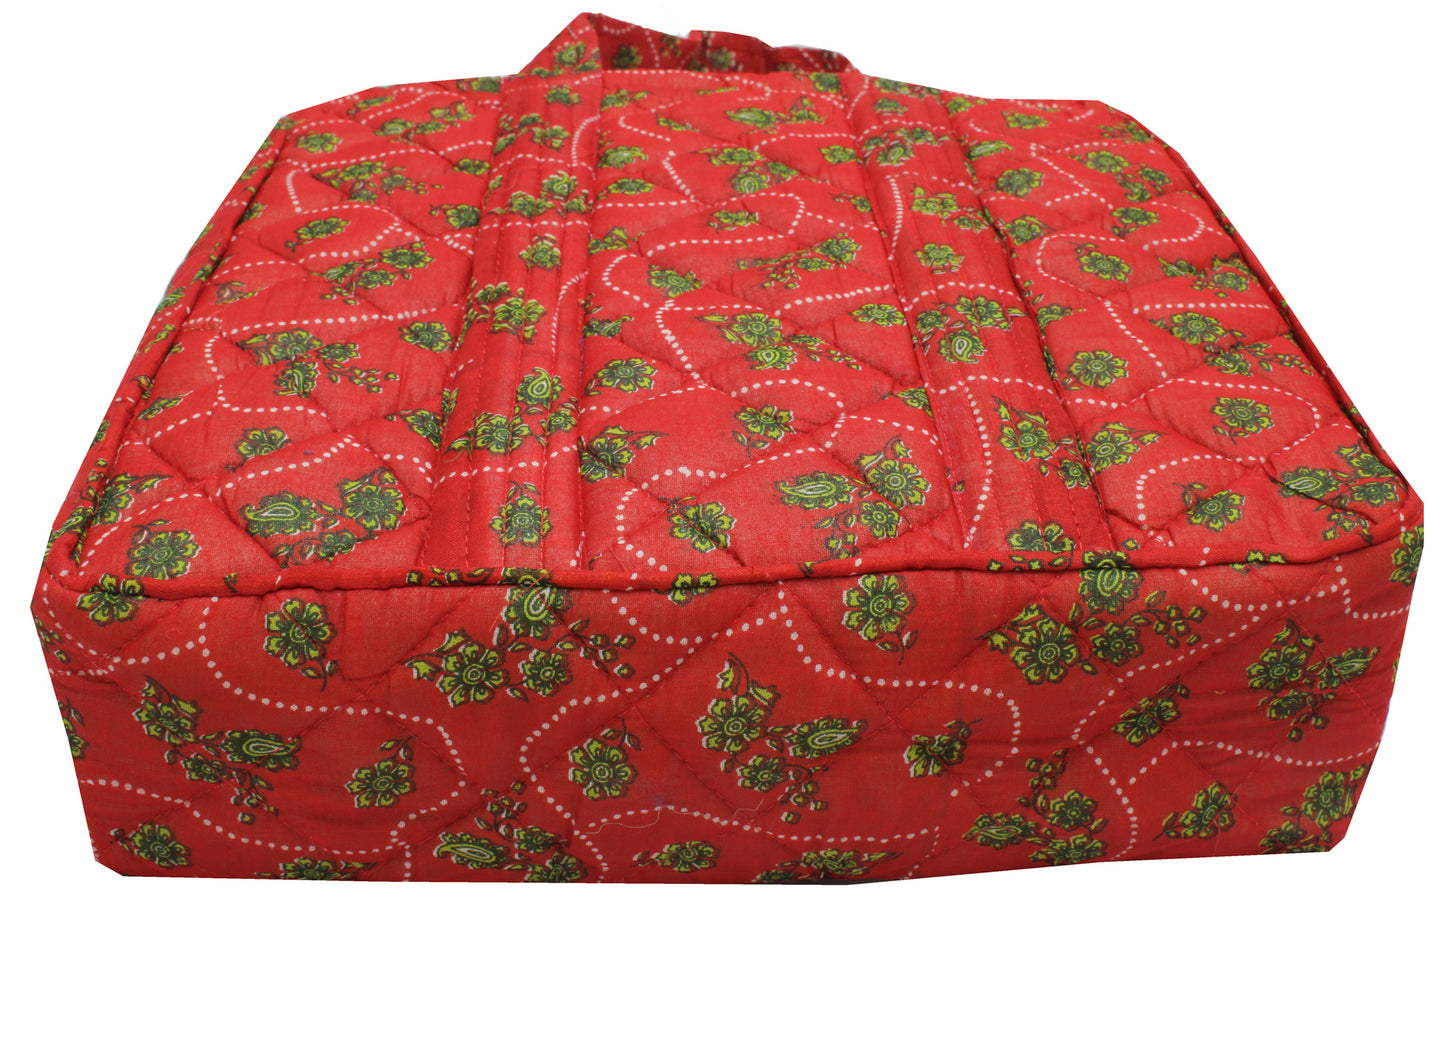 Sushila Vintage Red Tote Bag 100% Pure Silk Printed Handbag Shoulder Bag